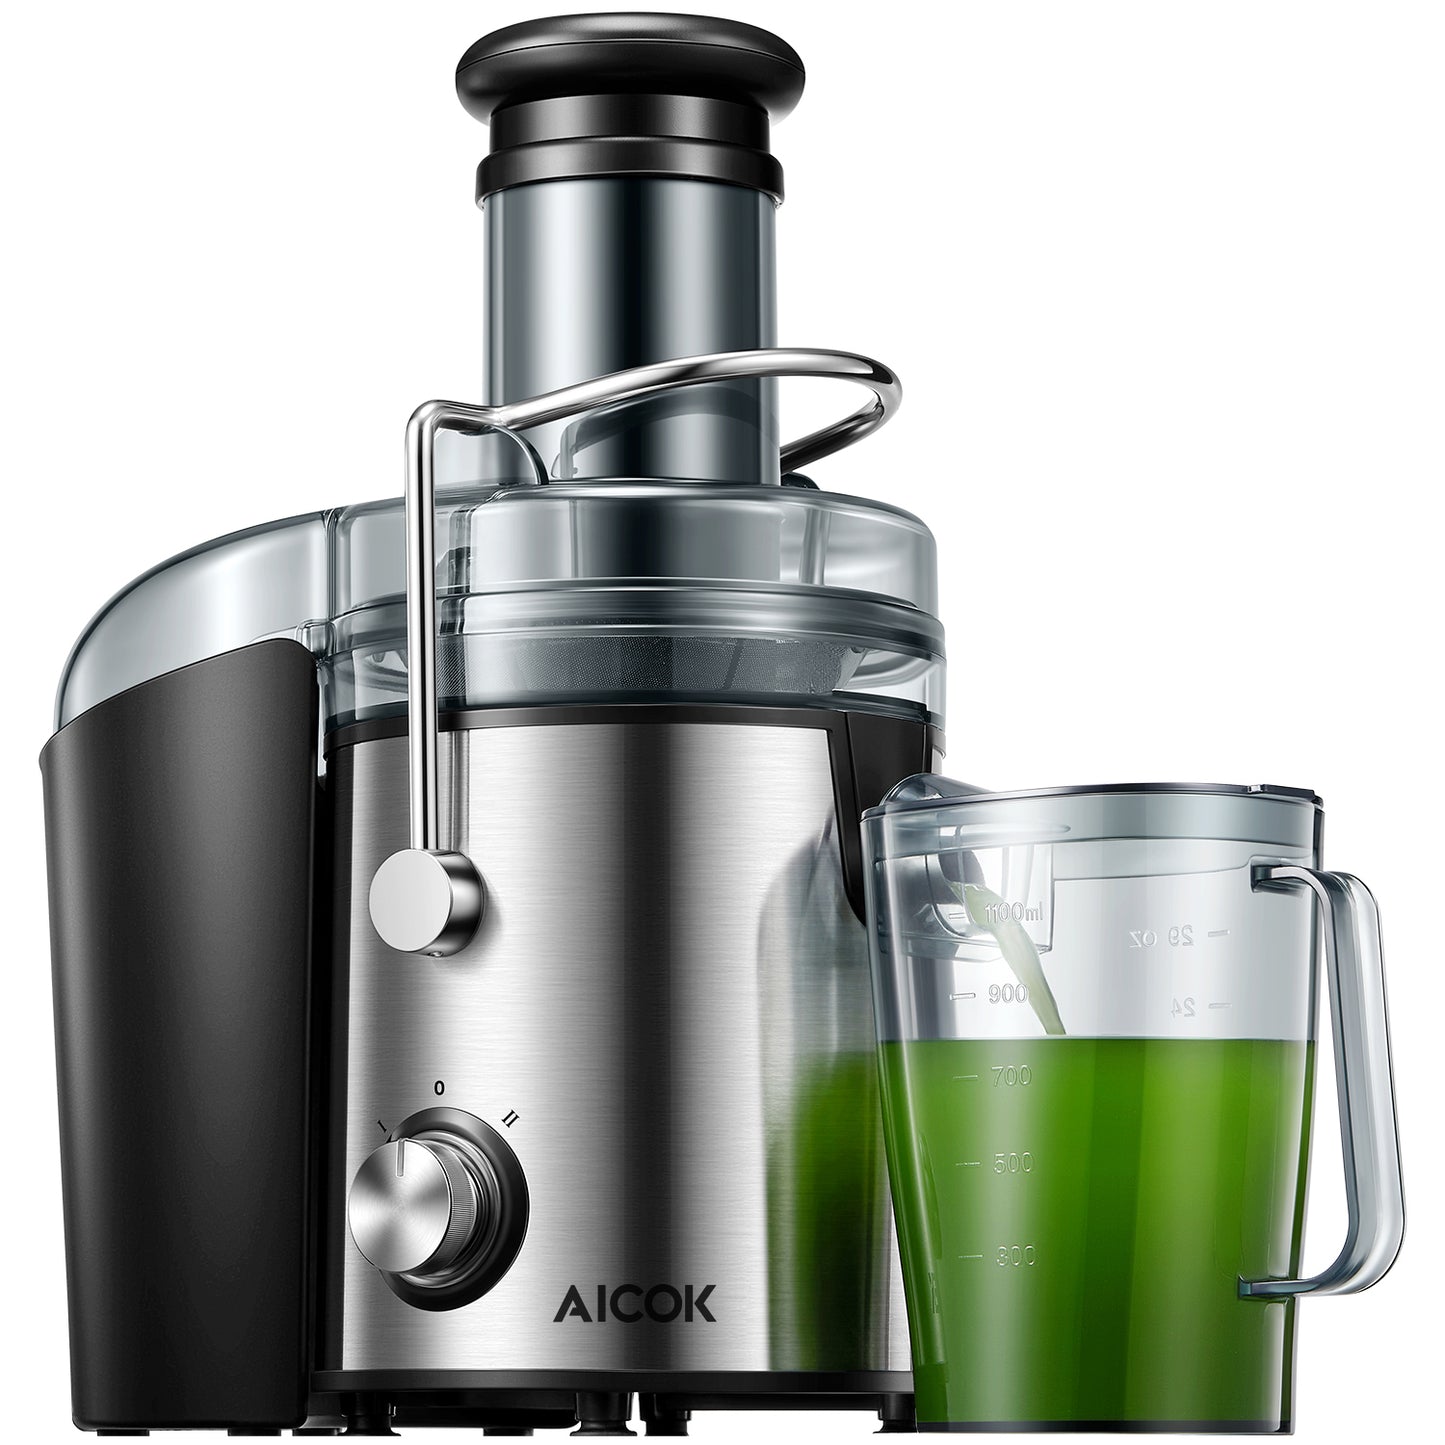 AICOK-Juicer, 800W Stainless Steel Juicer Machines GS-332 Efficiency Juicer Machine fresh and healthy juice best juicer 2021